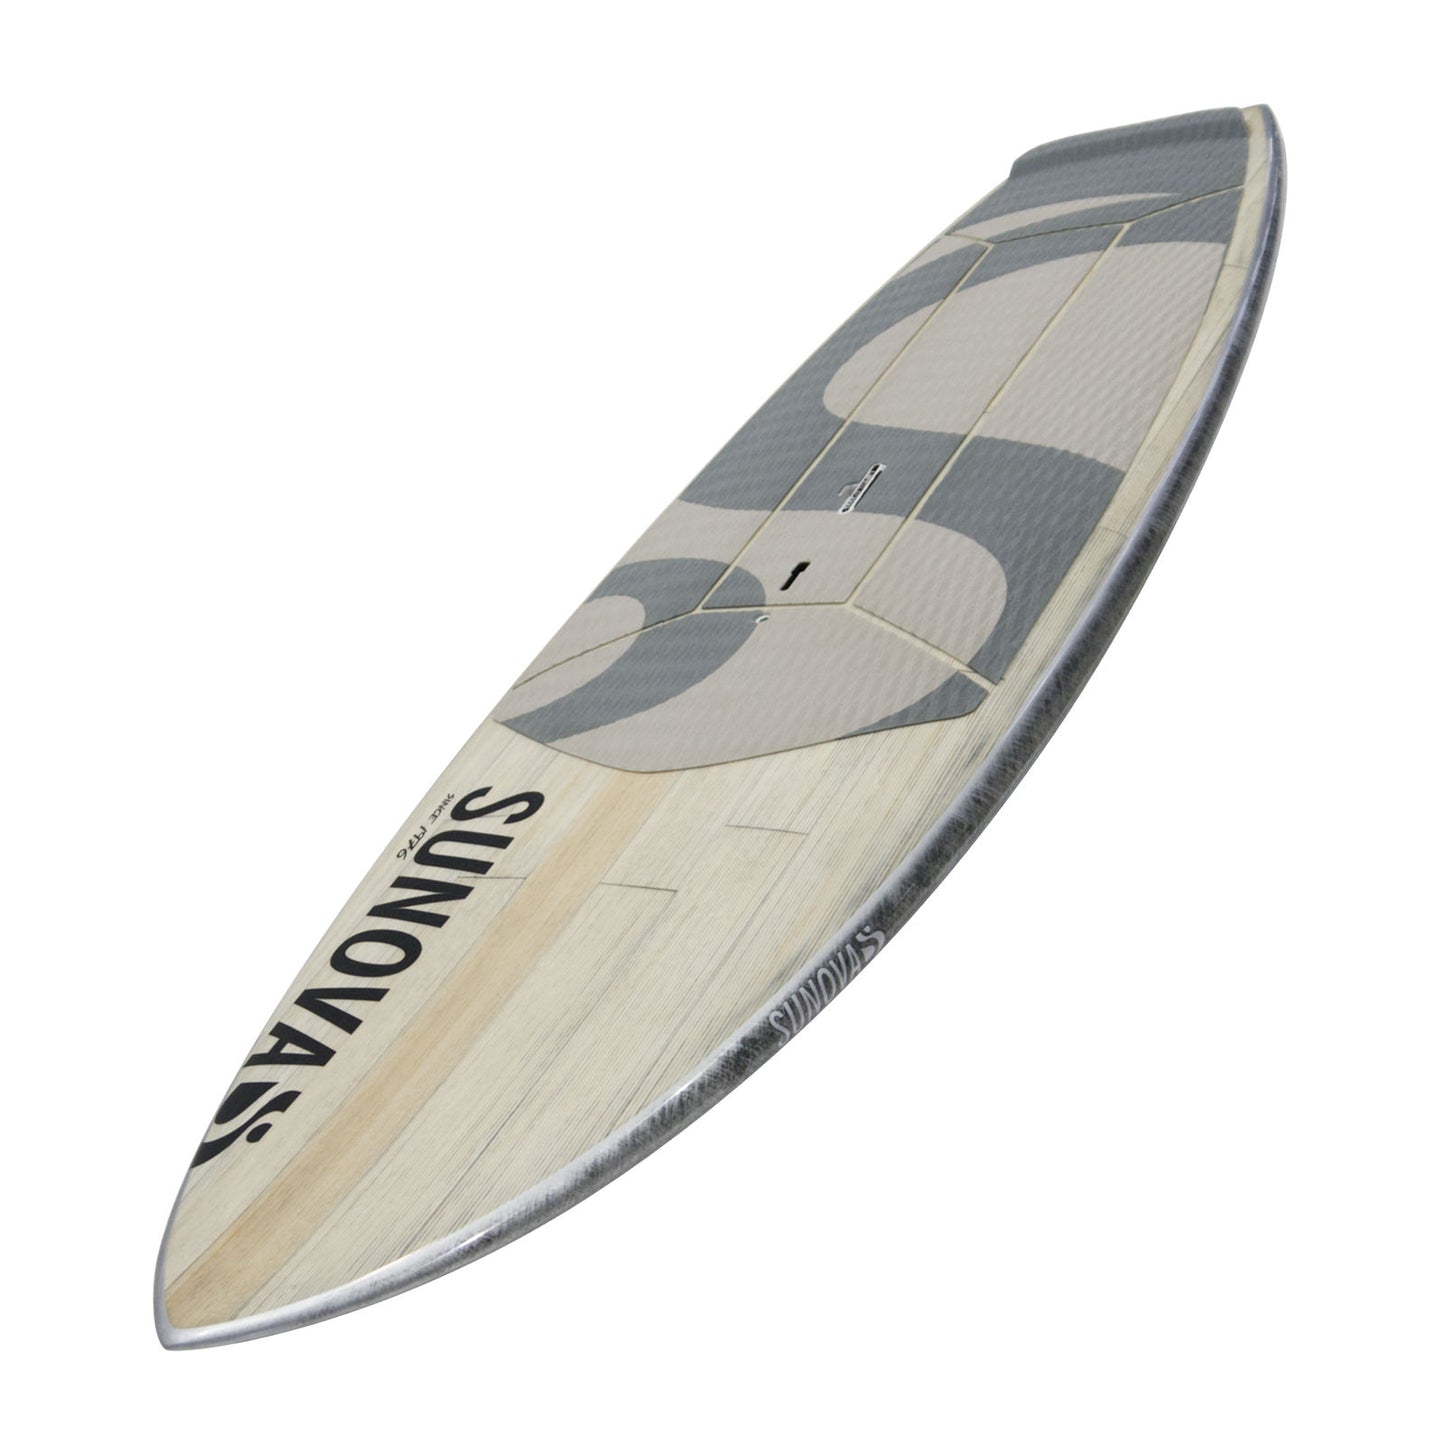 Perspektivische Ansicht des Sunova Skate Wave SUP Board in der XXX Bauweise.